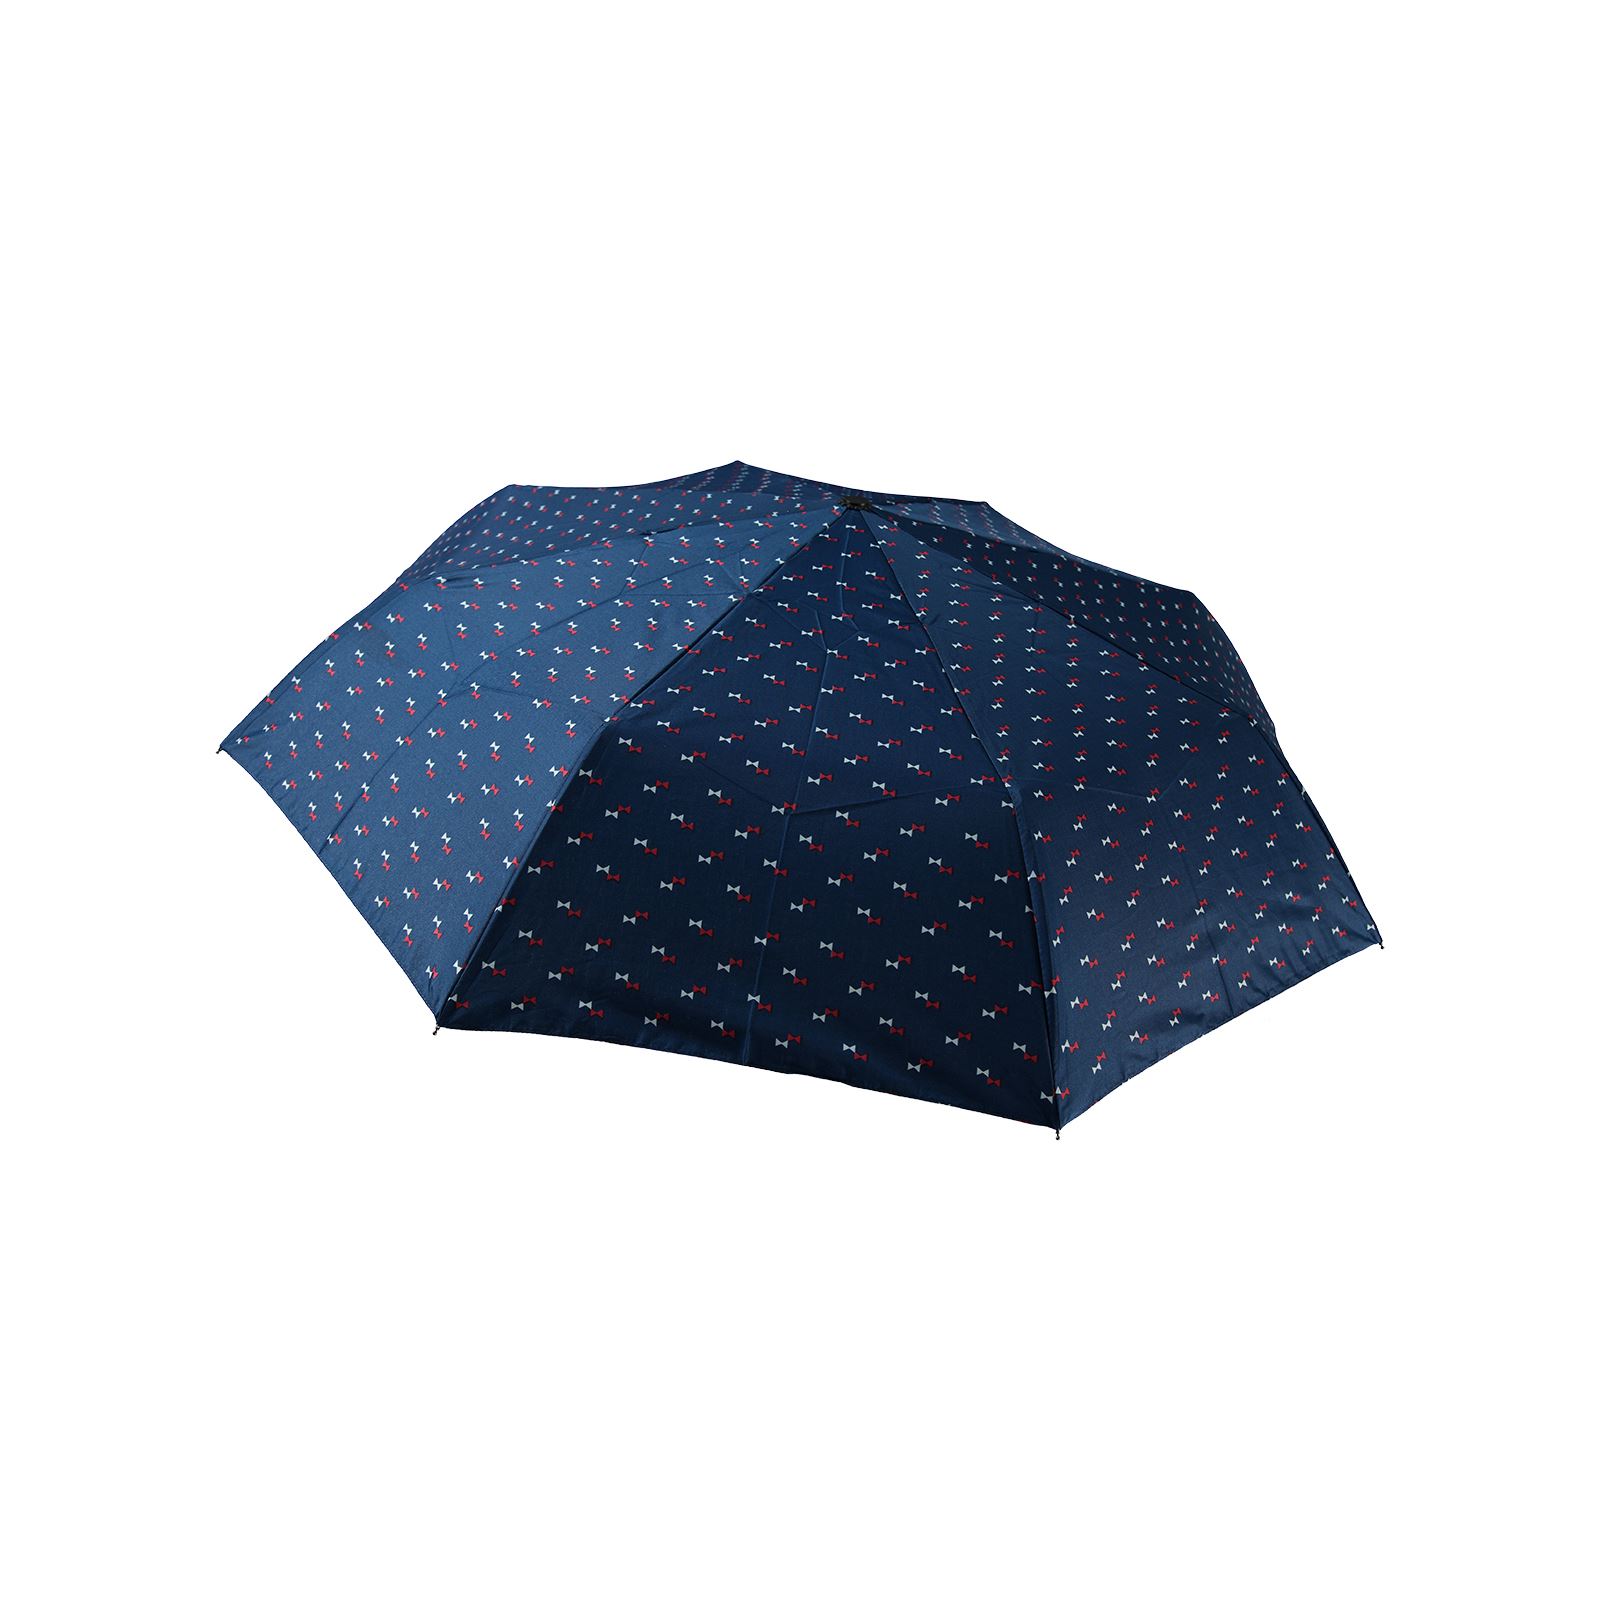 Rainwalker Otomatik Kadın Şemsiyesi Mavi